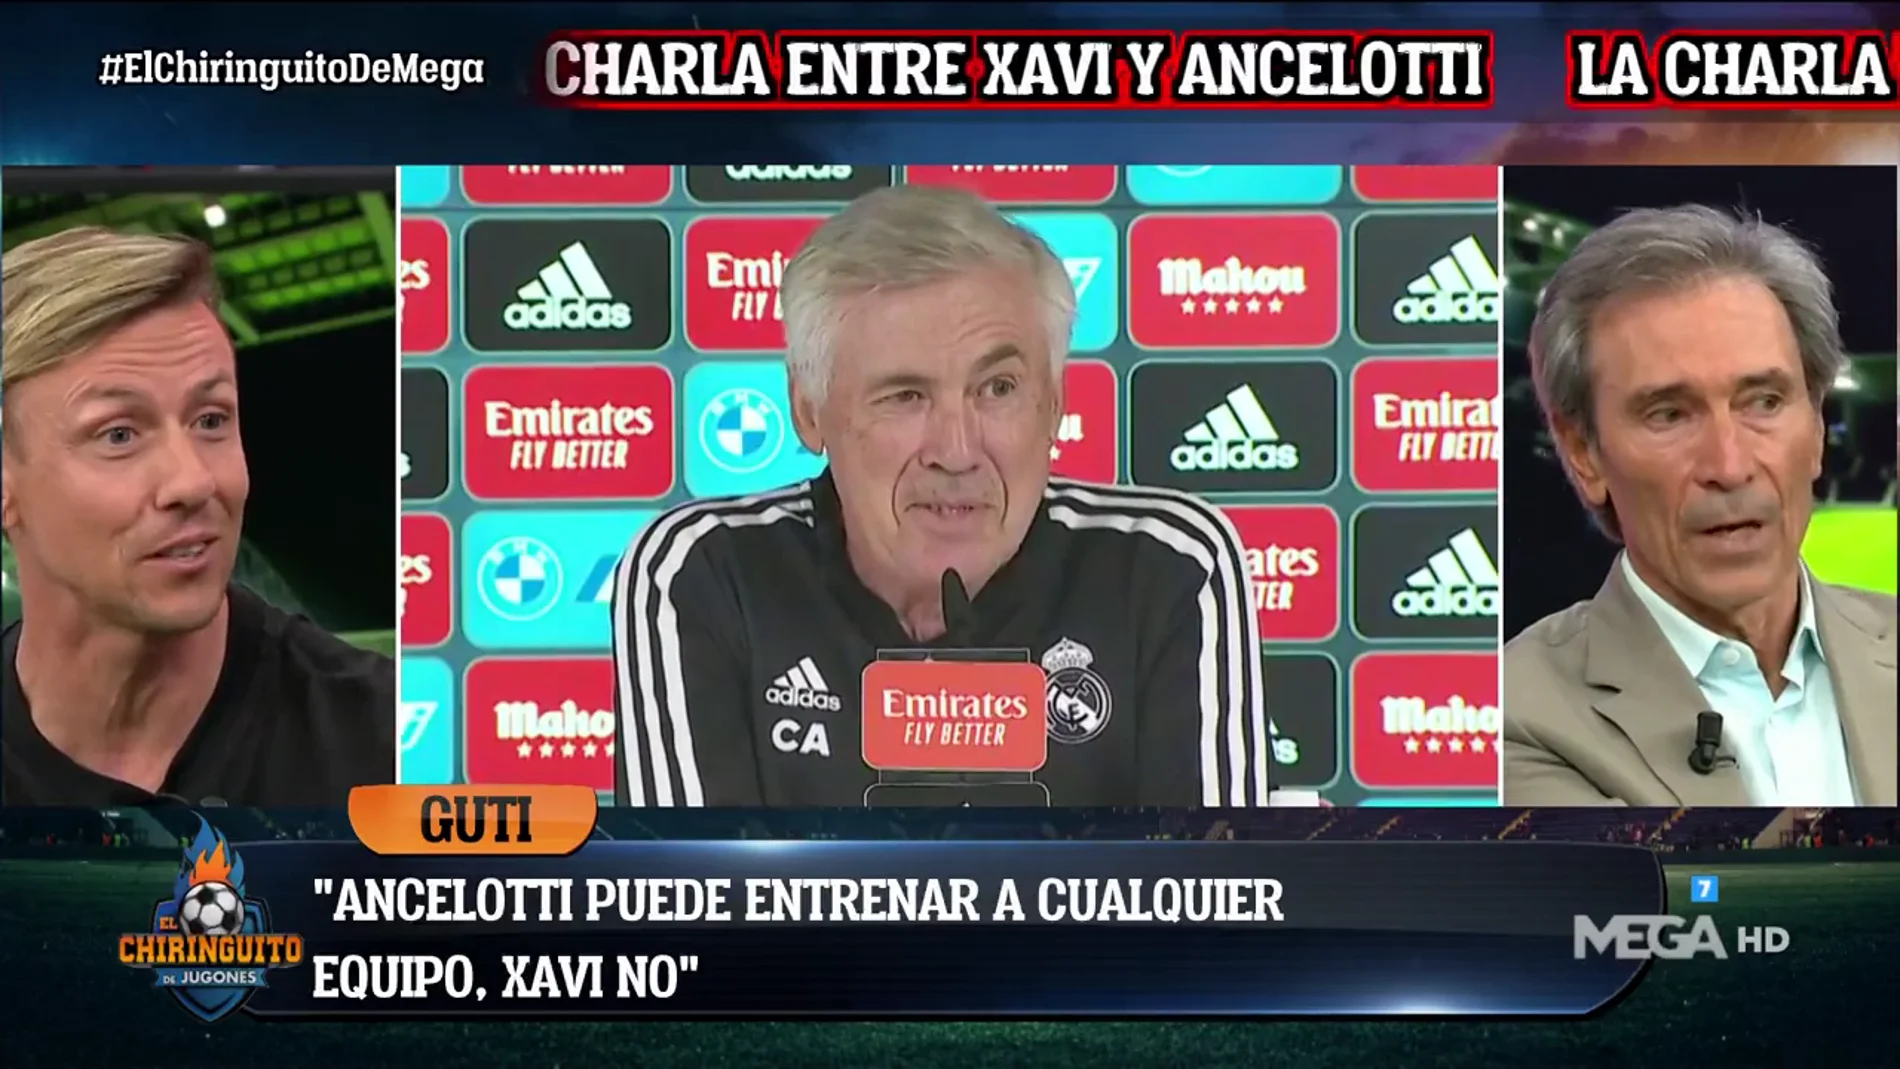 "Ancelotti puede entrenar a cualquier equipo, Xavi no"